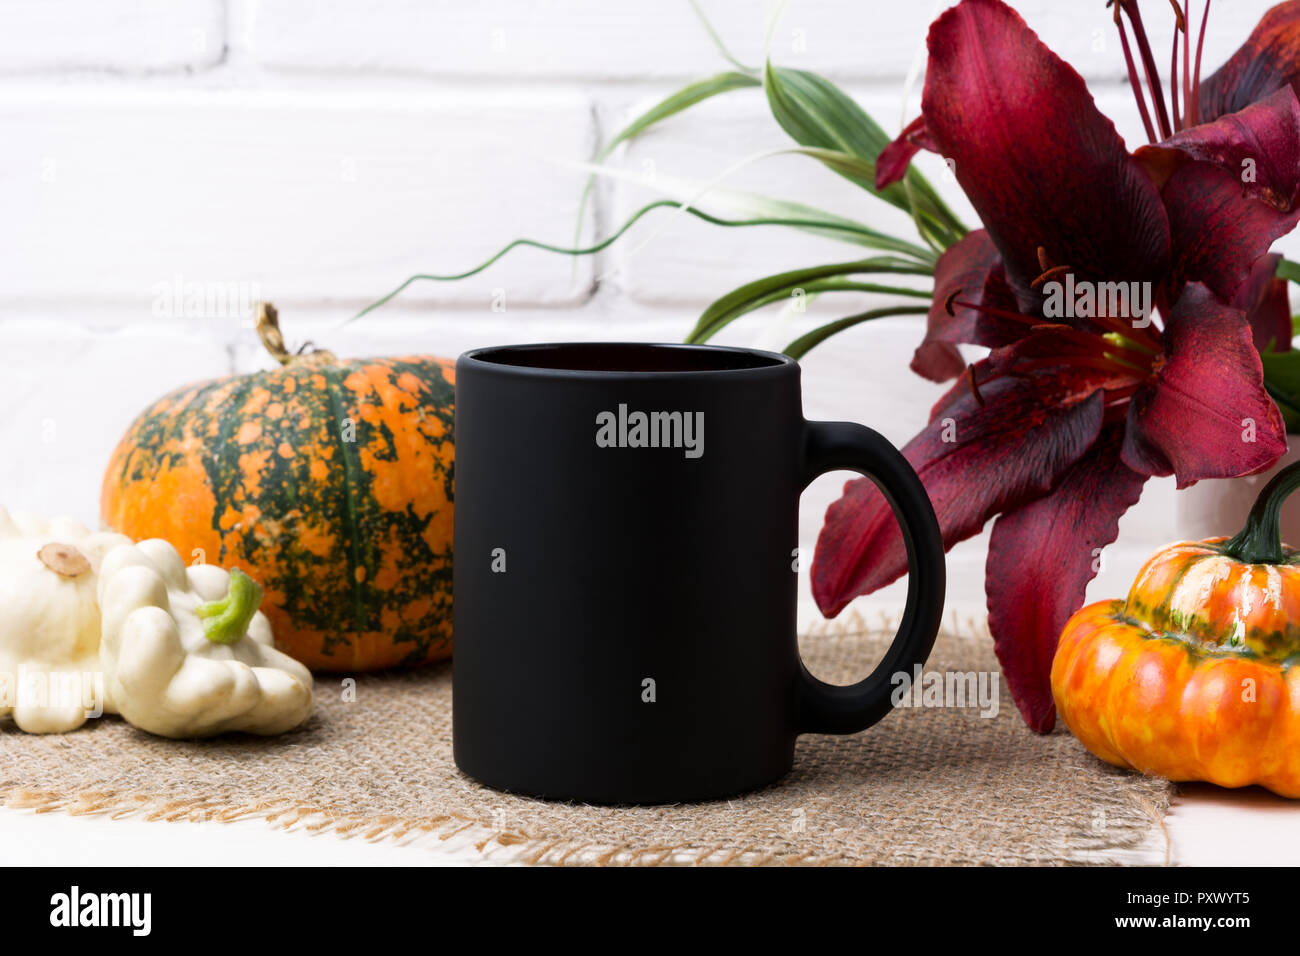 Tasse à café noir avec la maquette de l'automne de l'action orange citrouille et red lily. Mug vide maquette pour la promotion de marque. Banque D'Images